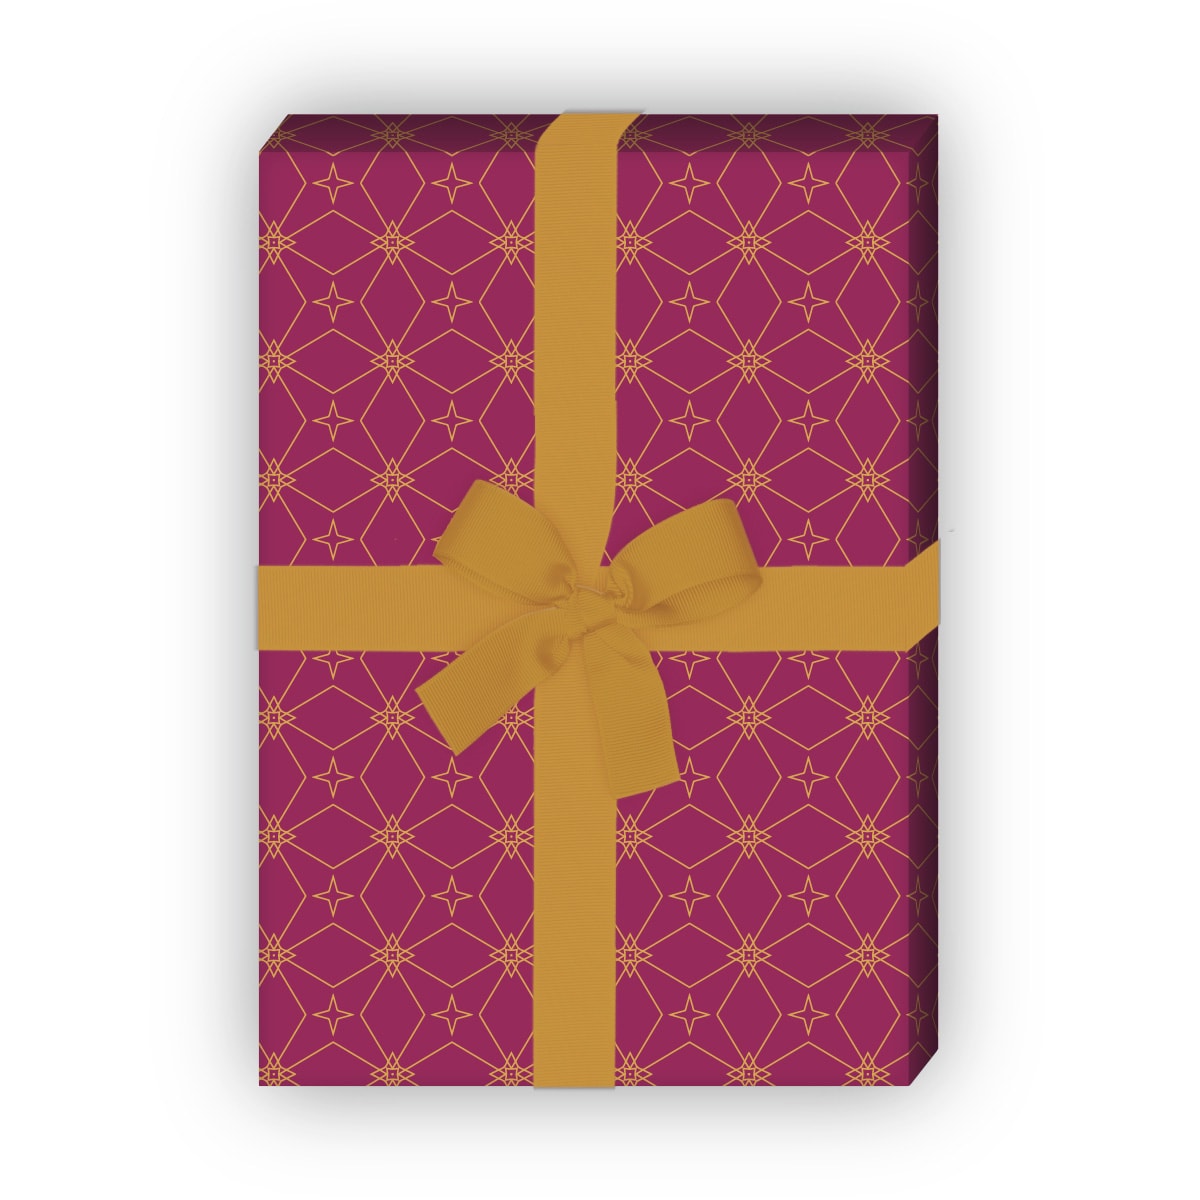 Kartenkaufrausch: Edles Sternen Mosaik Geschenkpapier aus unserer Weihnachts Papeterie in rot